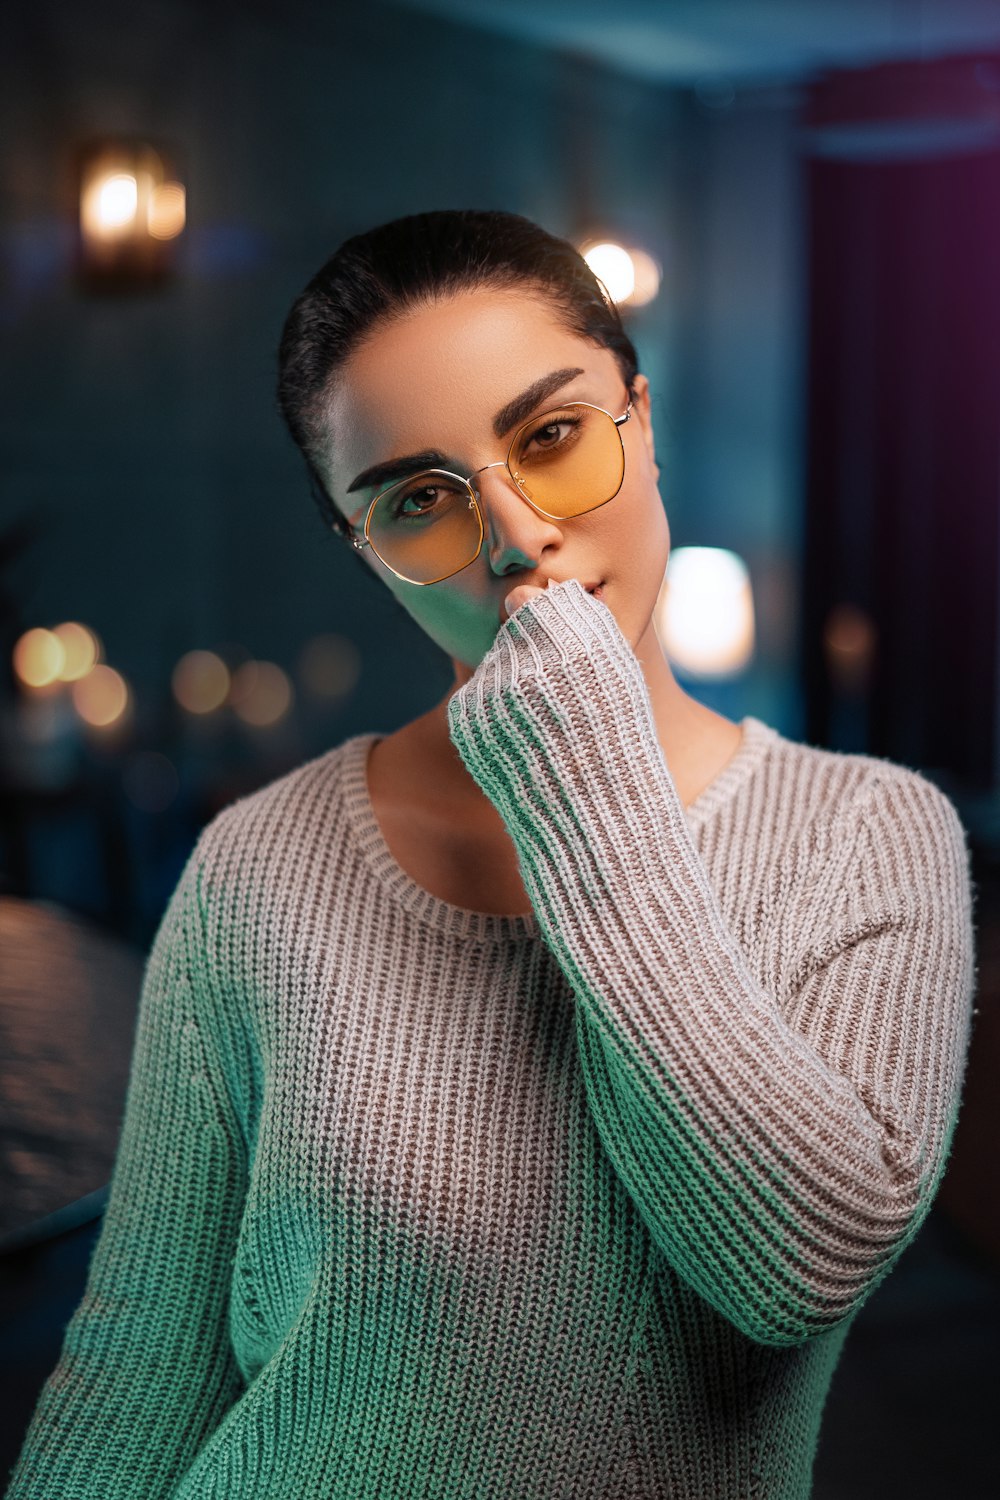 woman in green knit sweater wearing eyeglasses